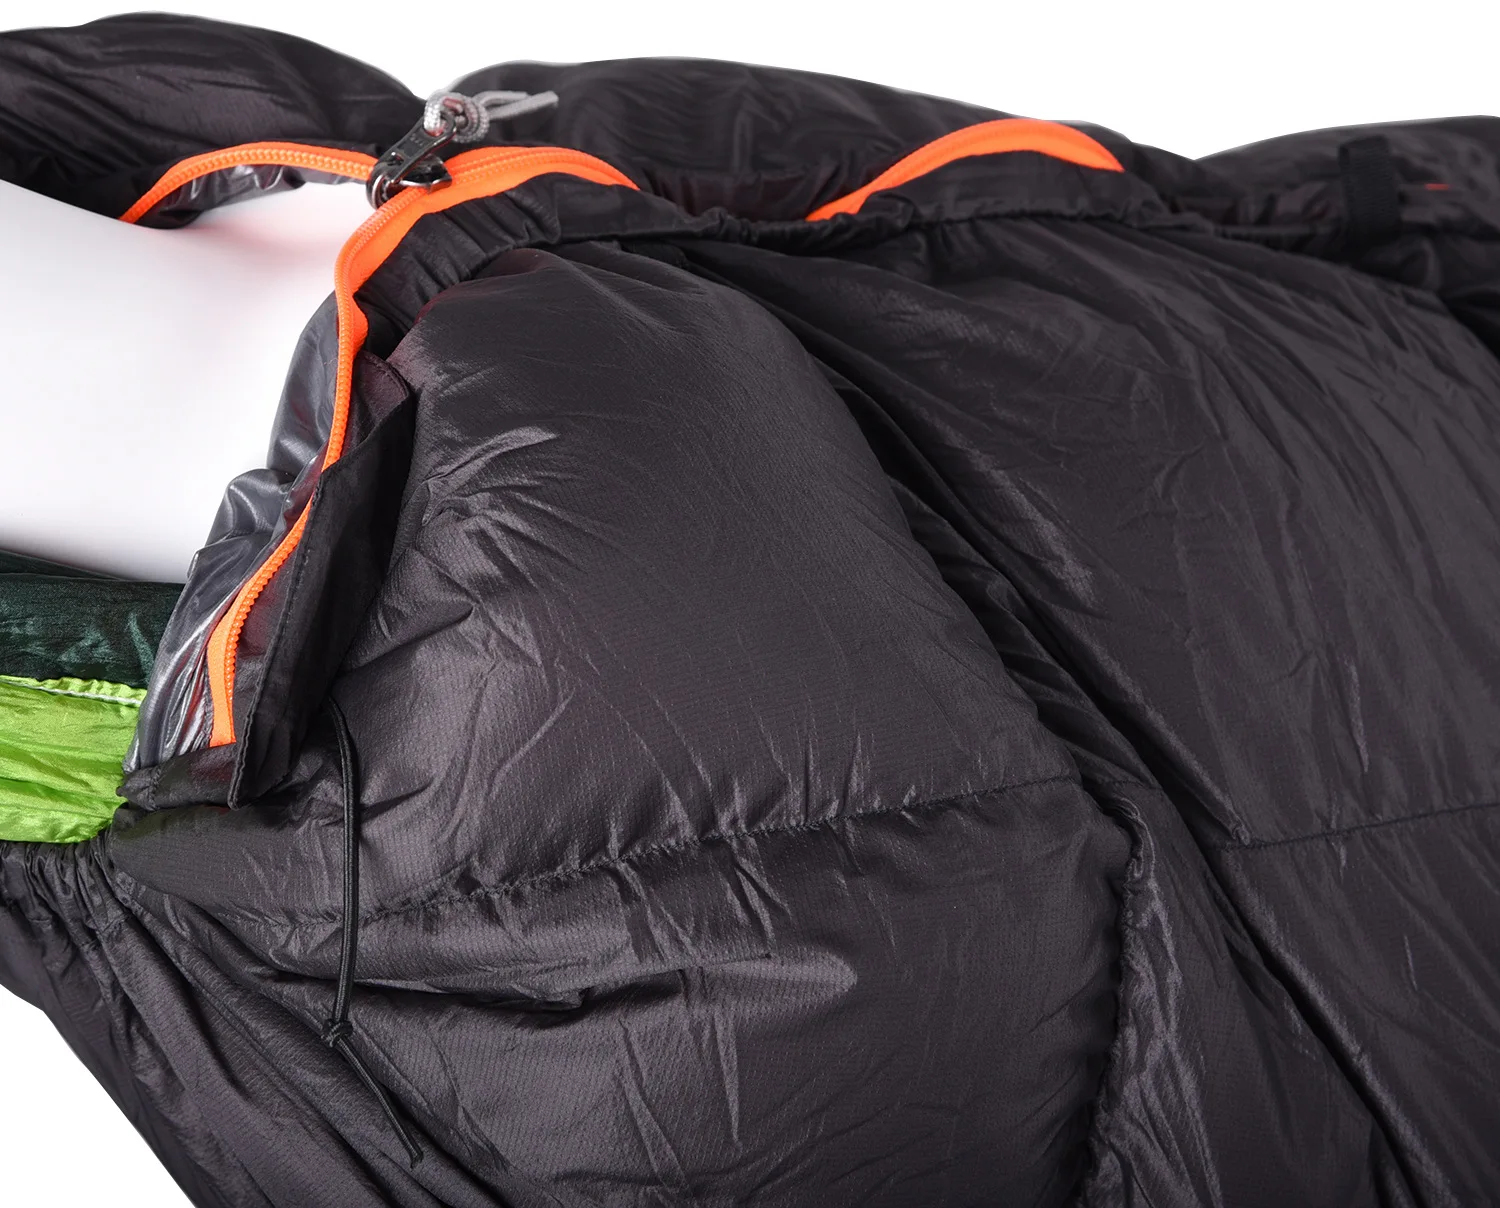 VILEAD портативный вниз гамак для сна сумка Сверхлегкий Водонепроницаемый Кемпинг Туризм Открытый сон кровать для взрослых выживания зимние путешествия